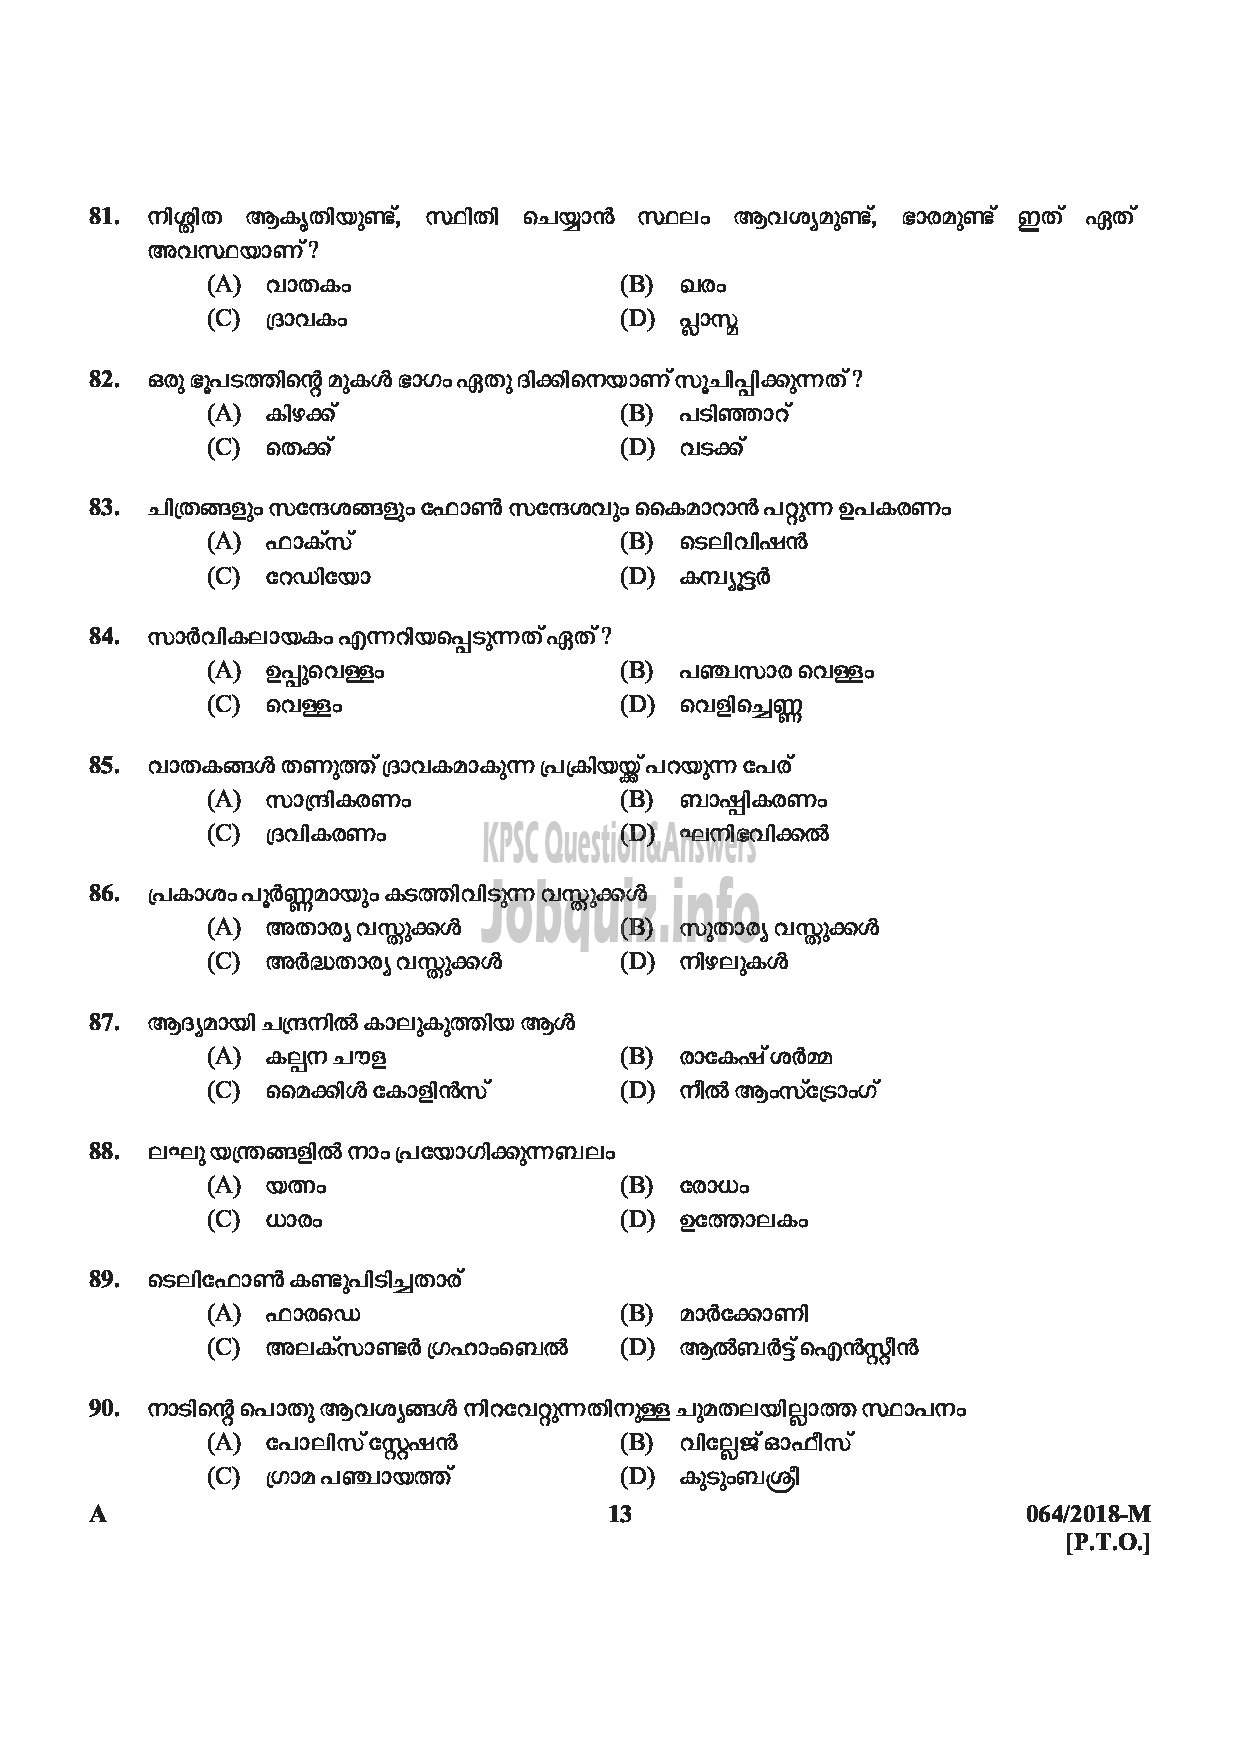 Kerala PSC Question Paper - LAST GRADE SERVANTS EXSERVICEMAN NCC SAINIK WELFARE-13